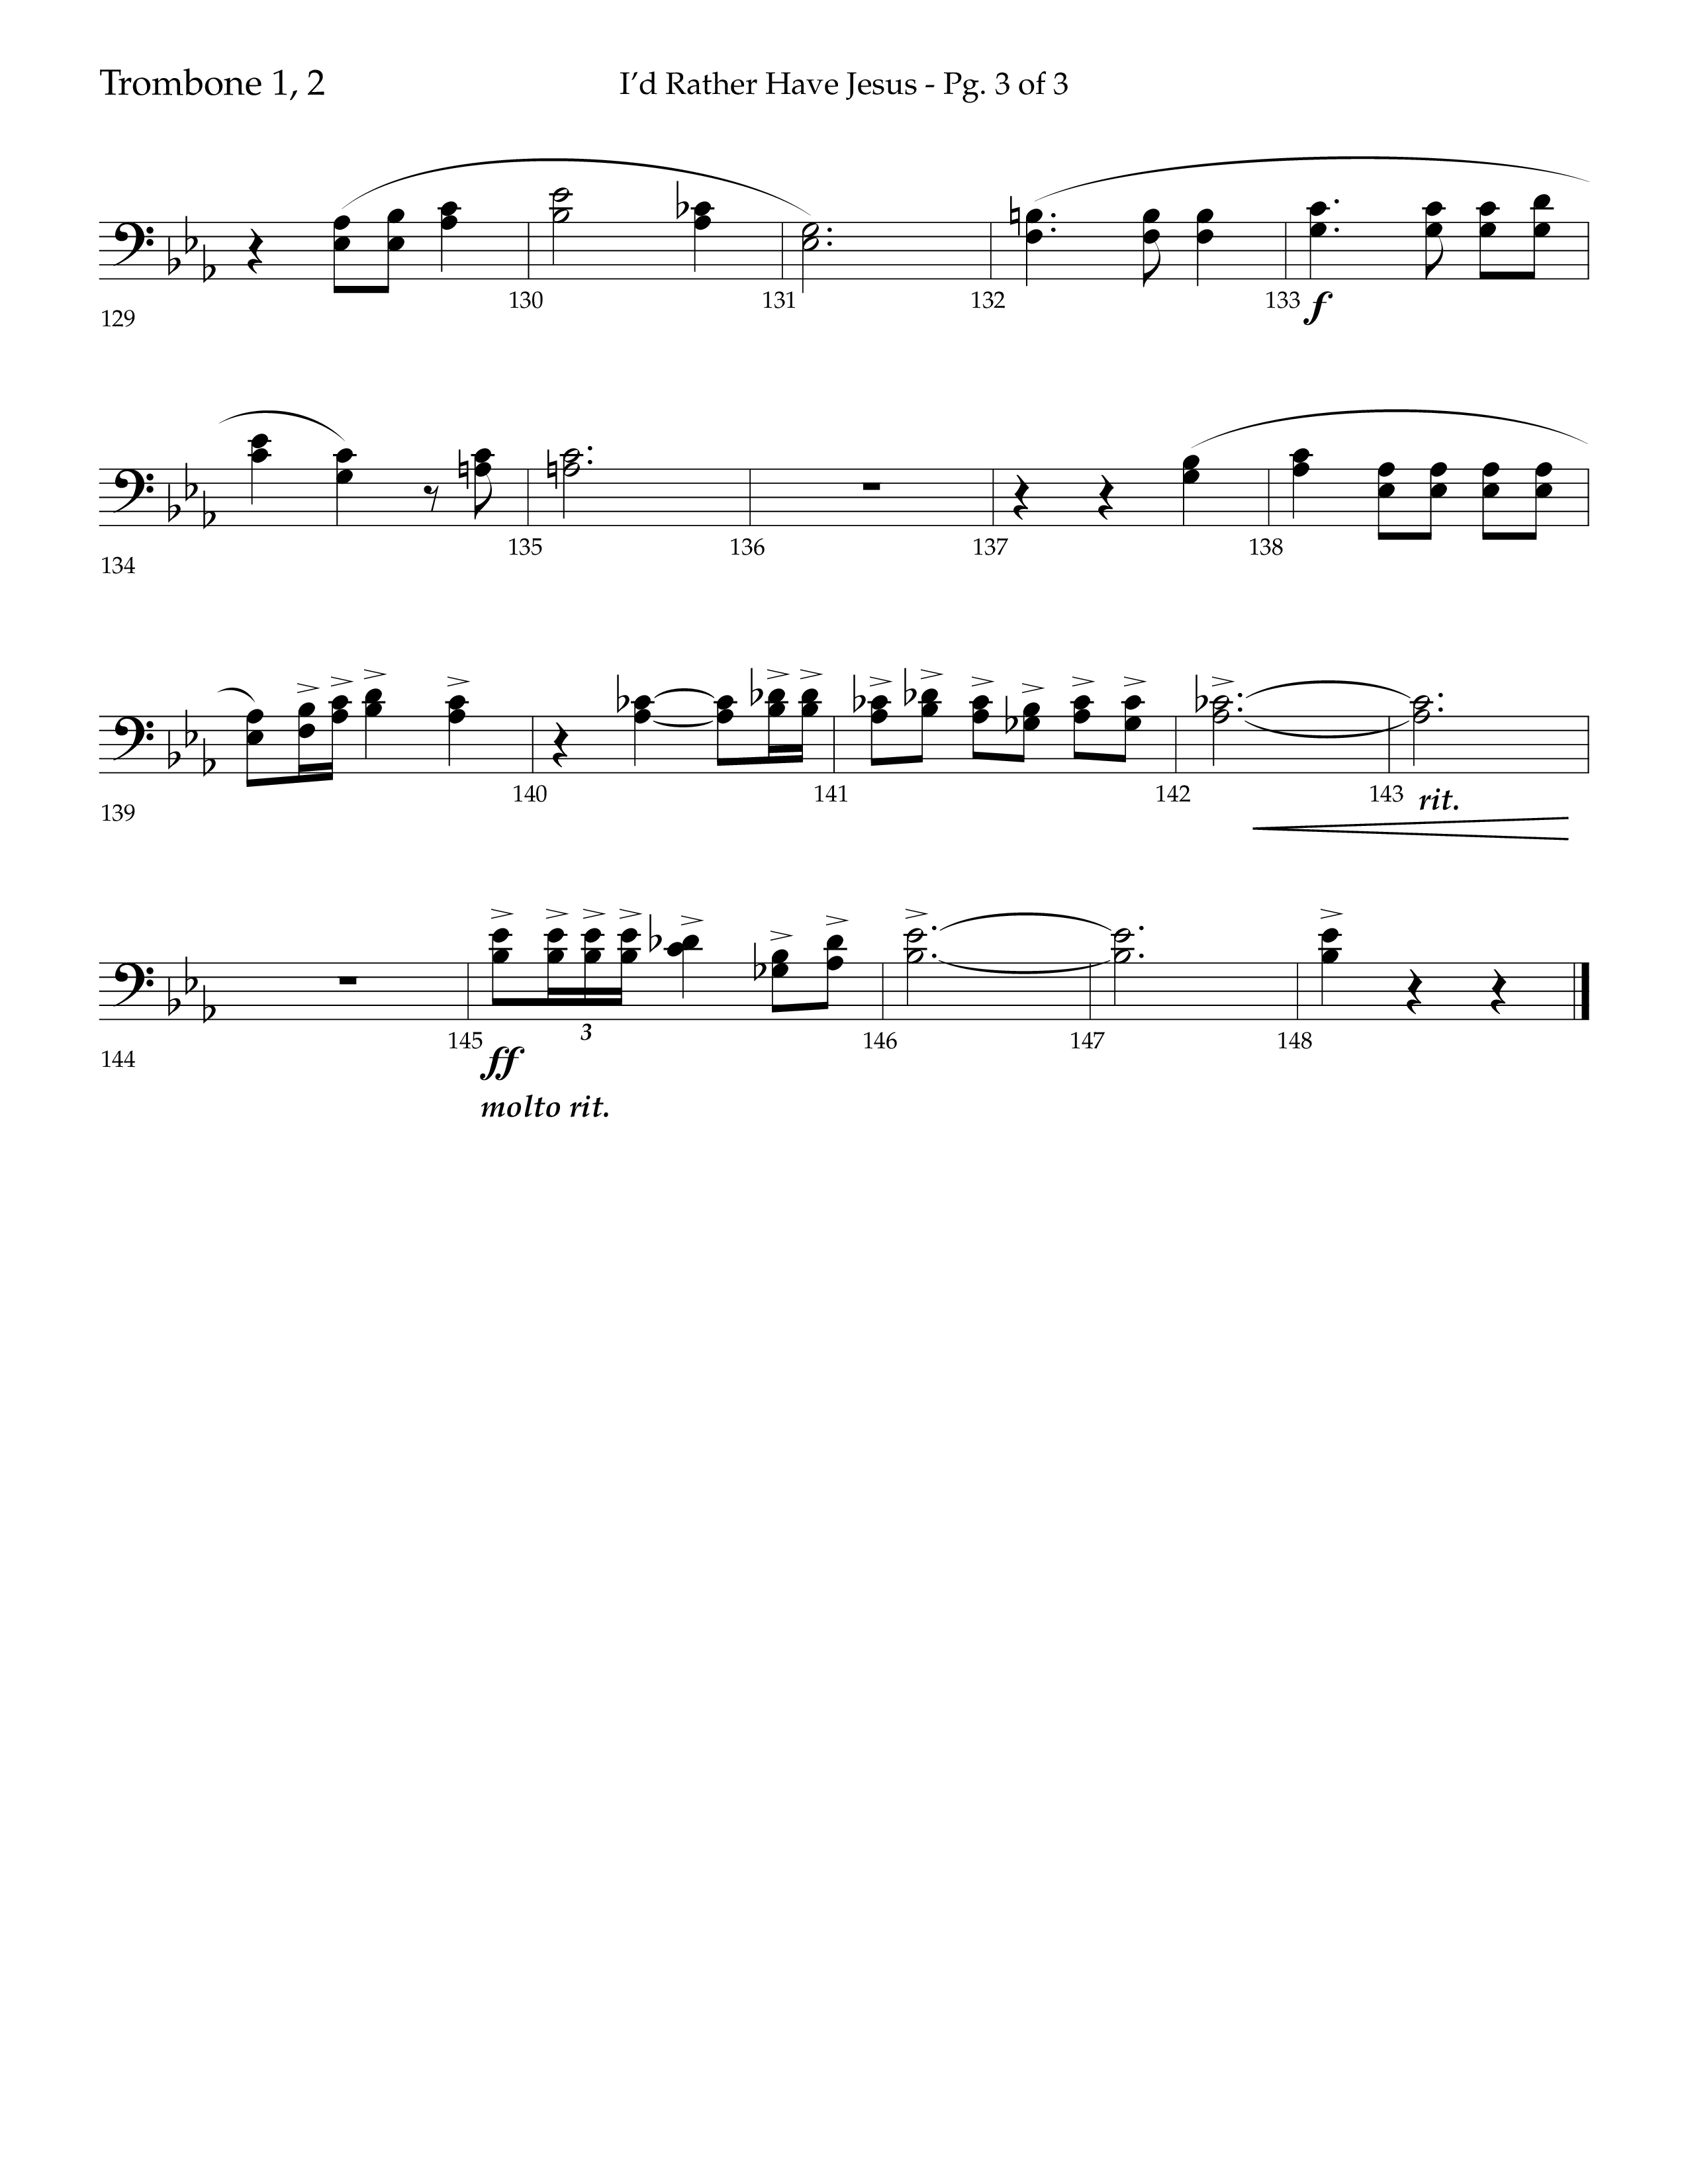 I'd Rather Have Jesus (Choral Anthem SATB) Trombone 1/2 (Lifeway Choral / Arr. Richard Kingsmore)